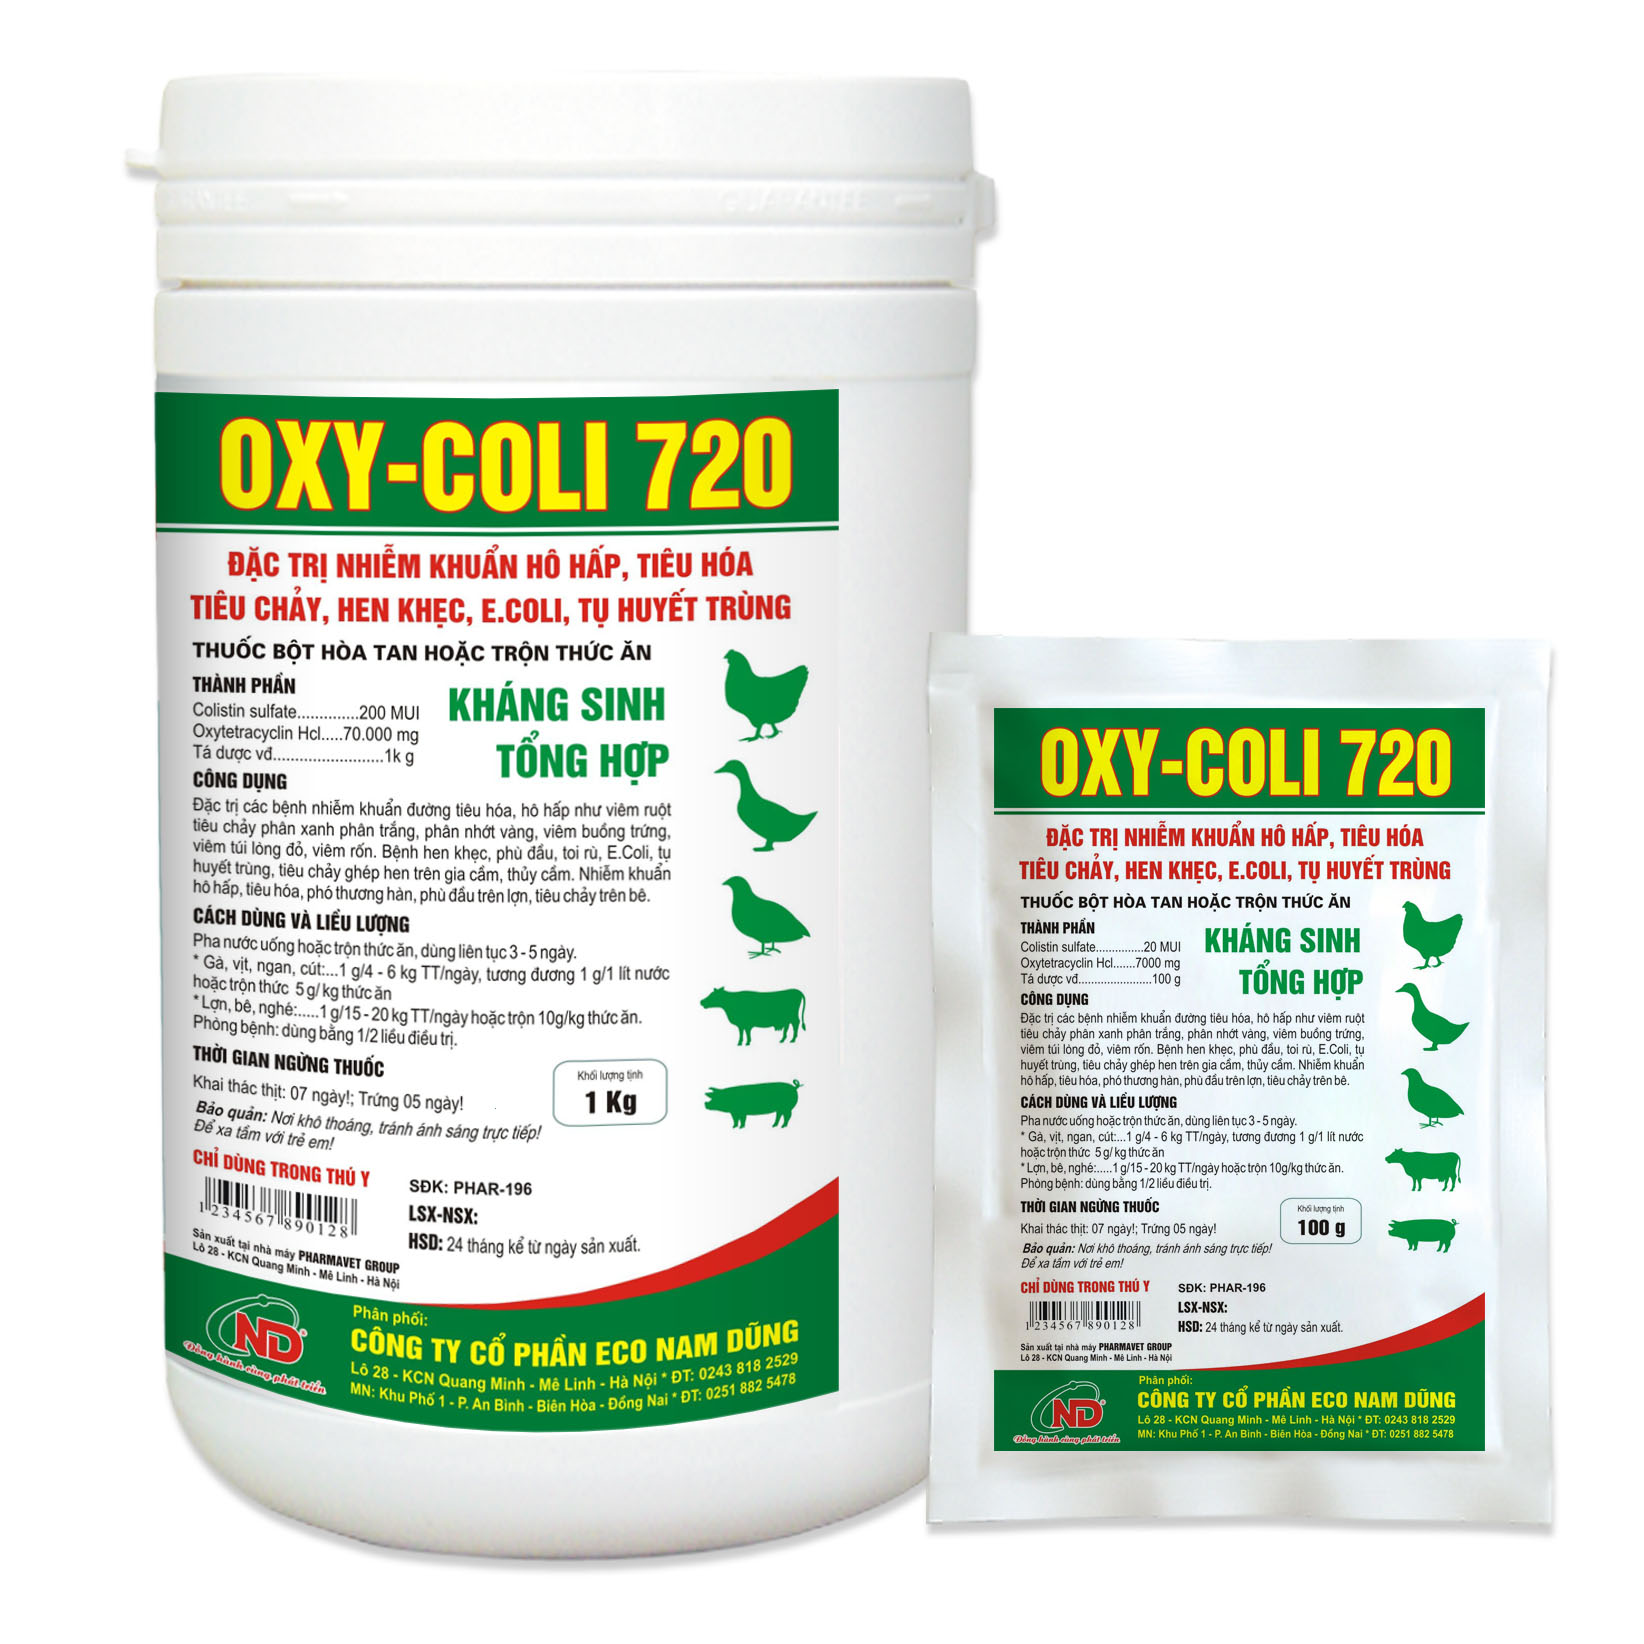 OXY-COLI 720